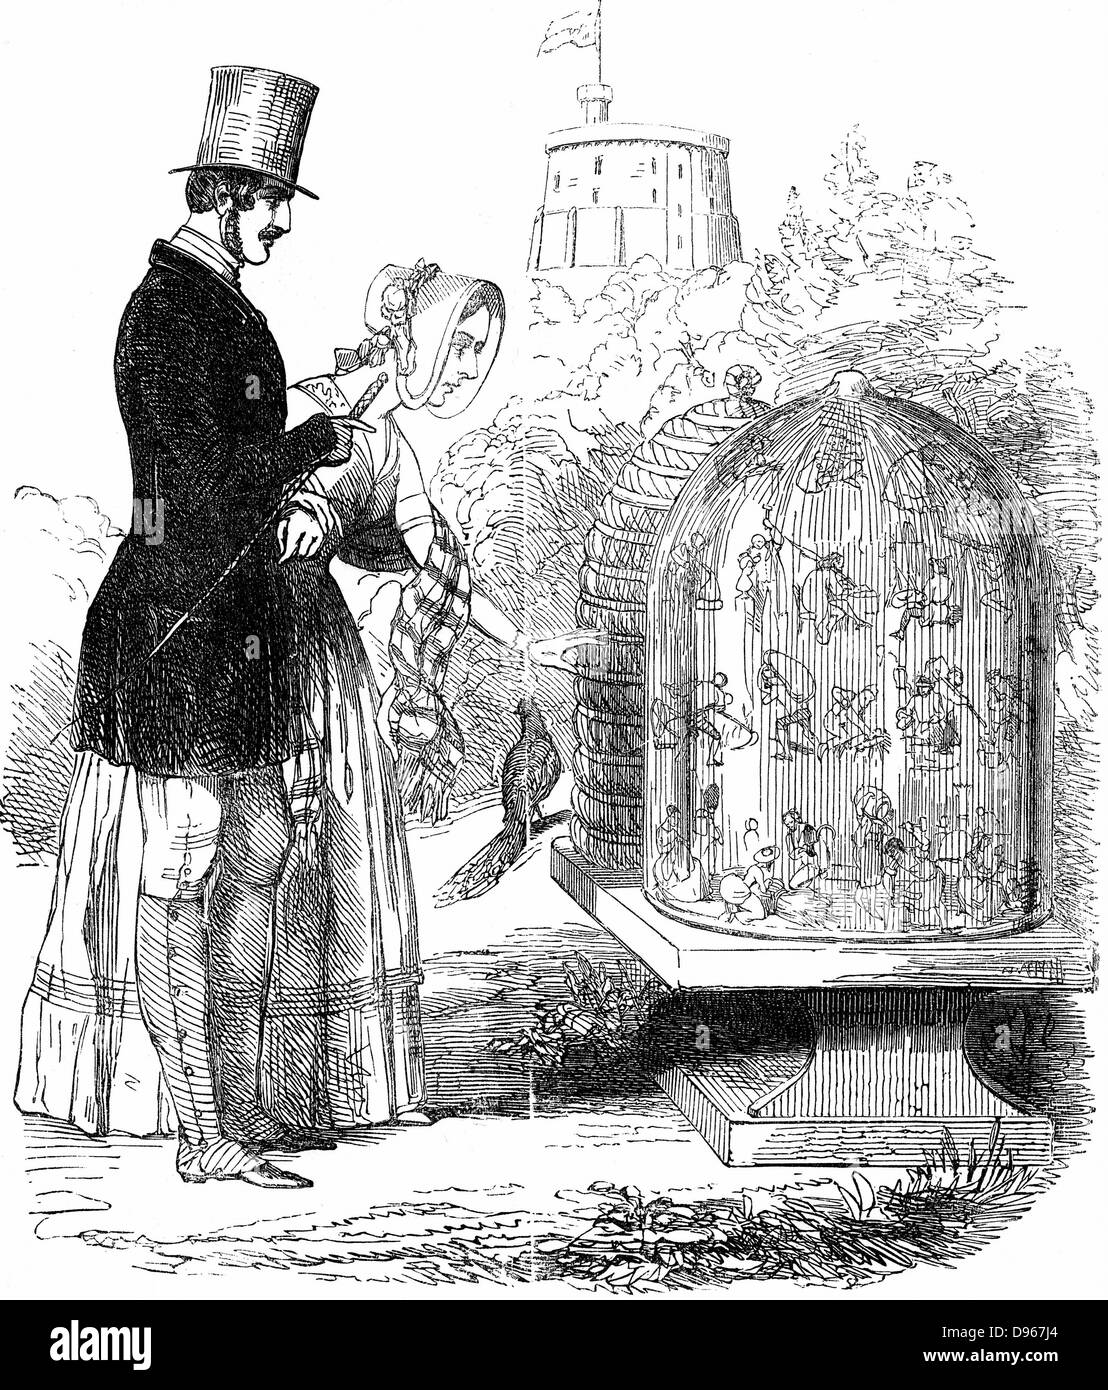 Albert montrant ses ruches à Victoria. Albert (1819-1861) Prince Consort de la reine Victoria, a permis d'introduire des ruches dans les ruchers royale, permettant de récolter le miel et la ruche (travailleurs) préservé avec juste assez de miel pour exister au cours de l'hiver. Caricature de 'Punch' 1844, assimilant les abeilles avec des ouvriers britanniques exploités. Banque D'Images